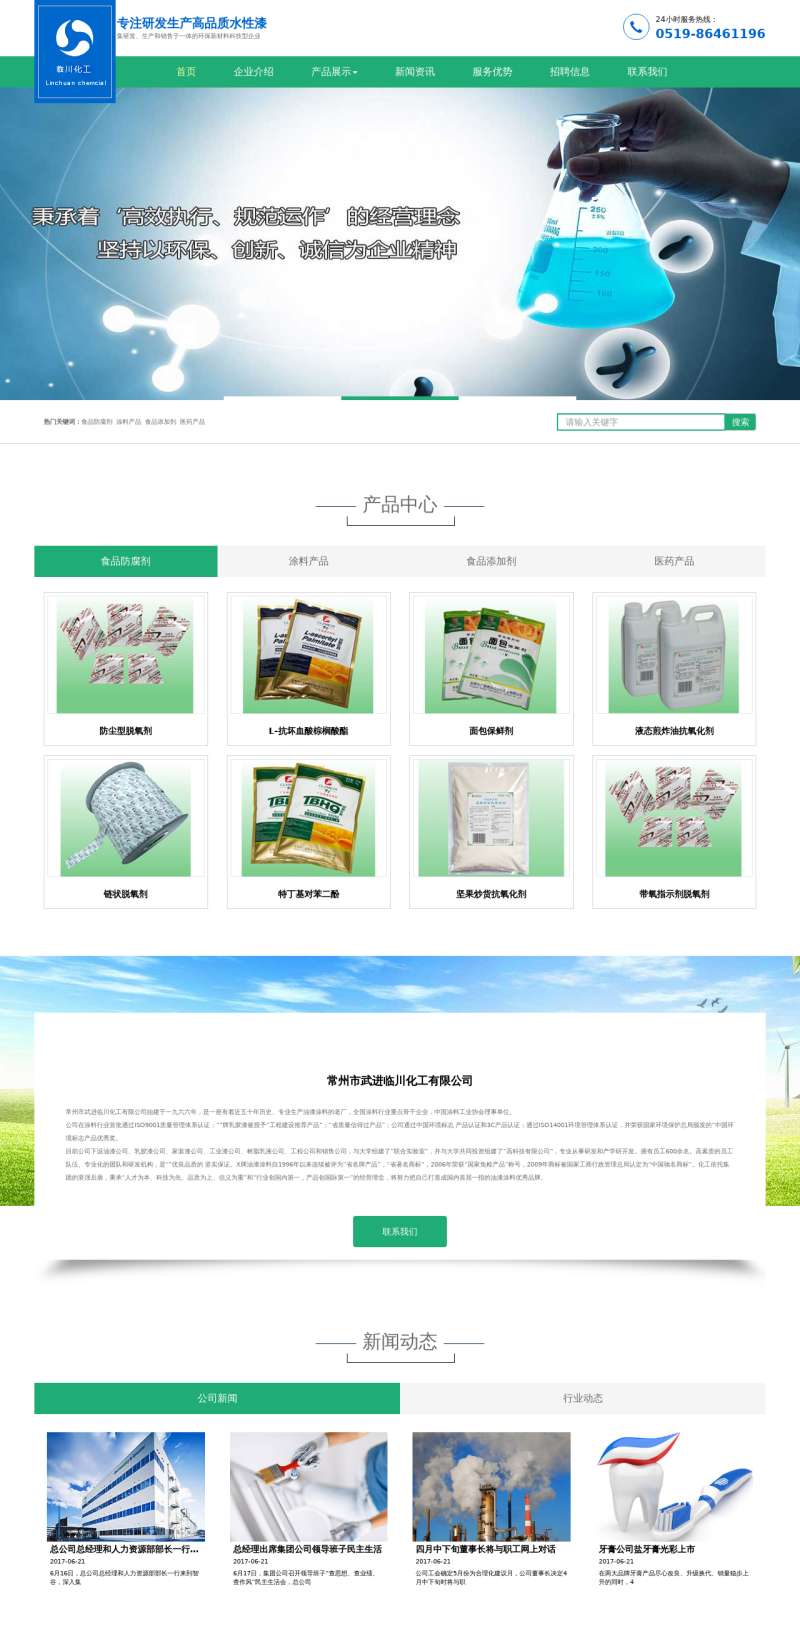 绿色的化工材料公司网站模板